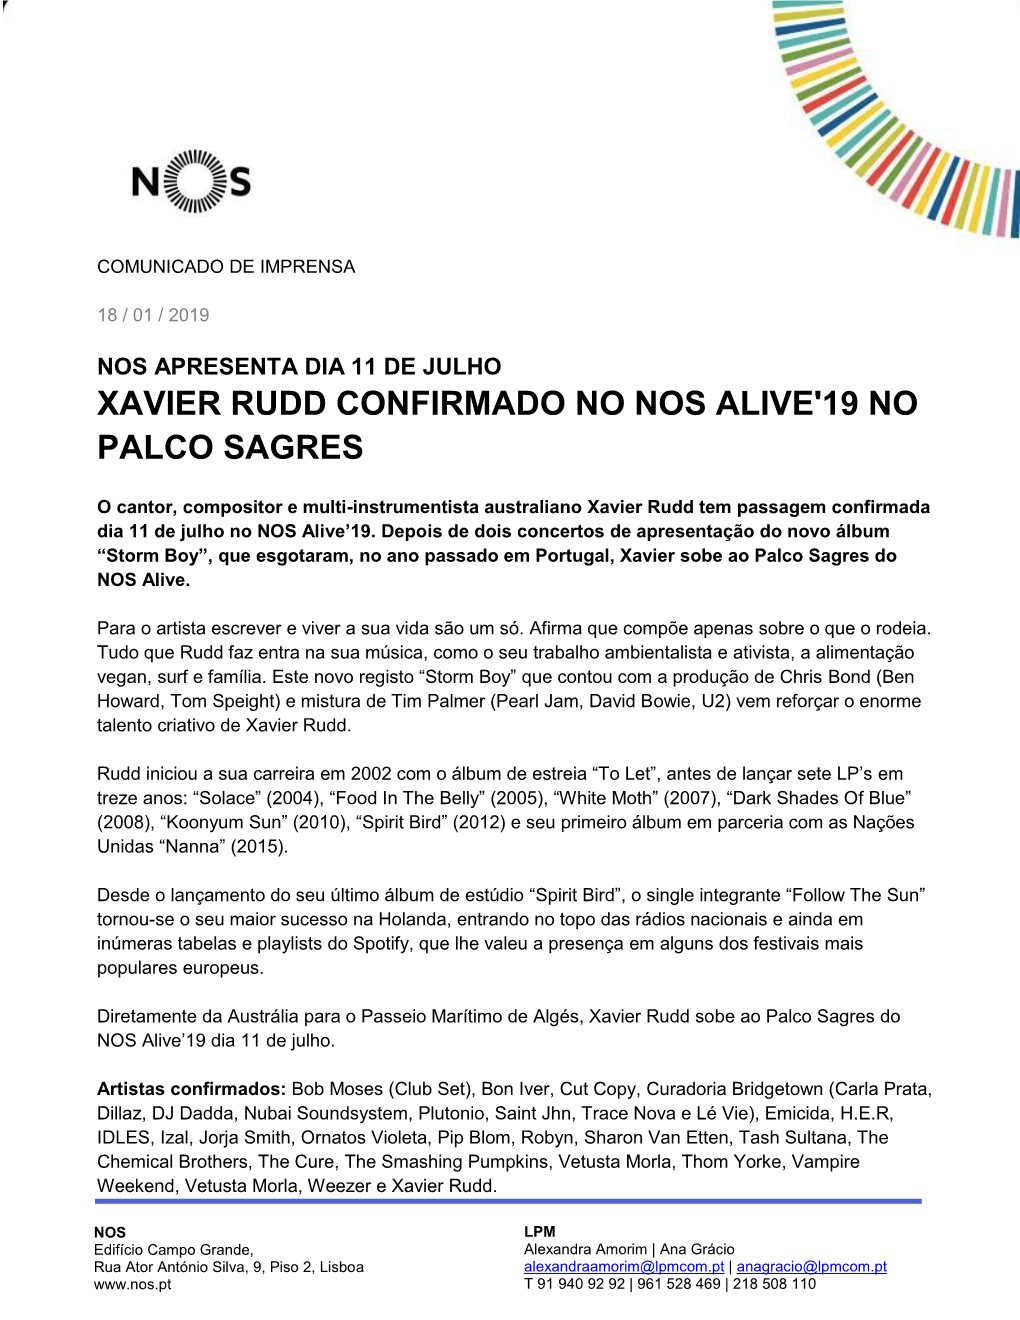 Xavier Rudd Confirmado No Nos Alive'19 No Palco Sagres